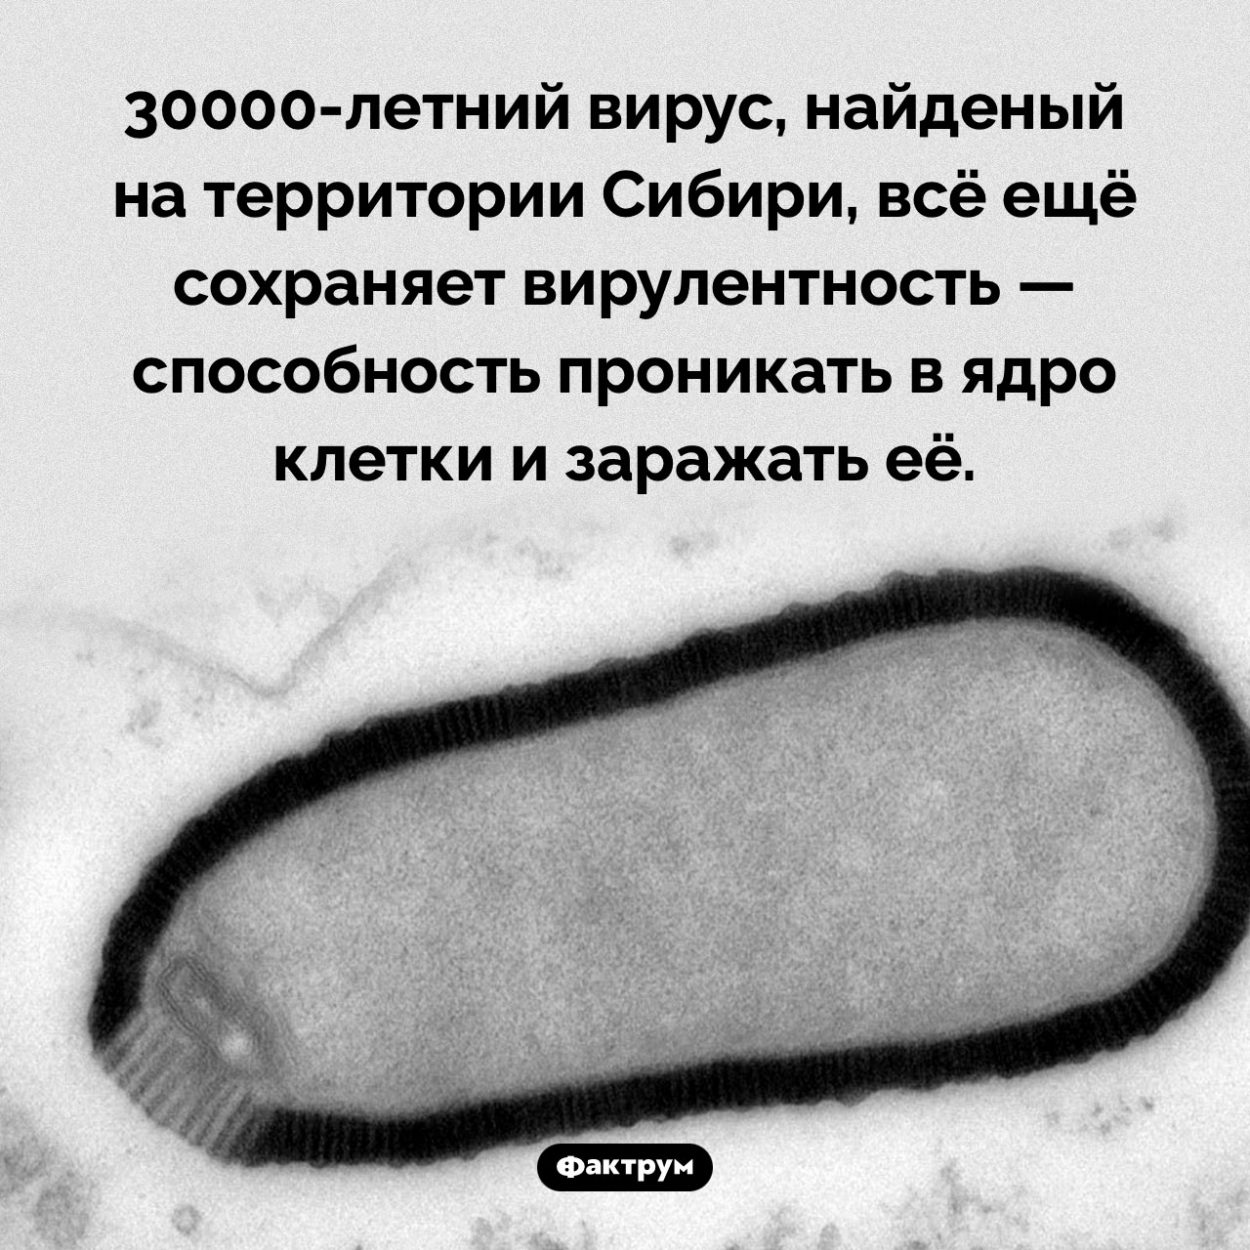 30000-летний вирус. 30000-летний вирус, найденый на территории Сибири, всё ещё сохраняет вирулентность — способность проникать в ядро клетки и заражать её.